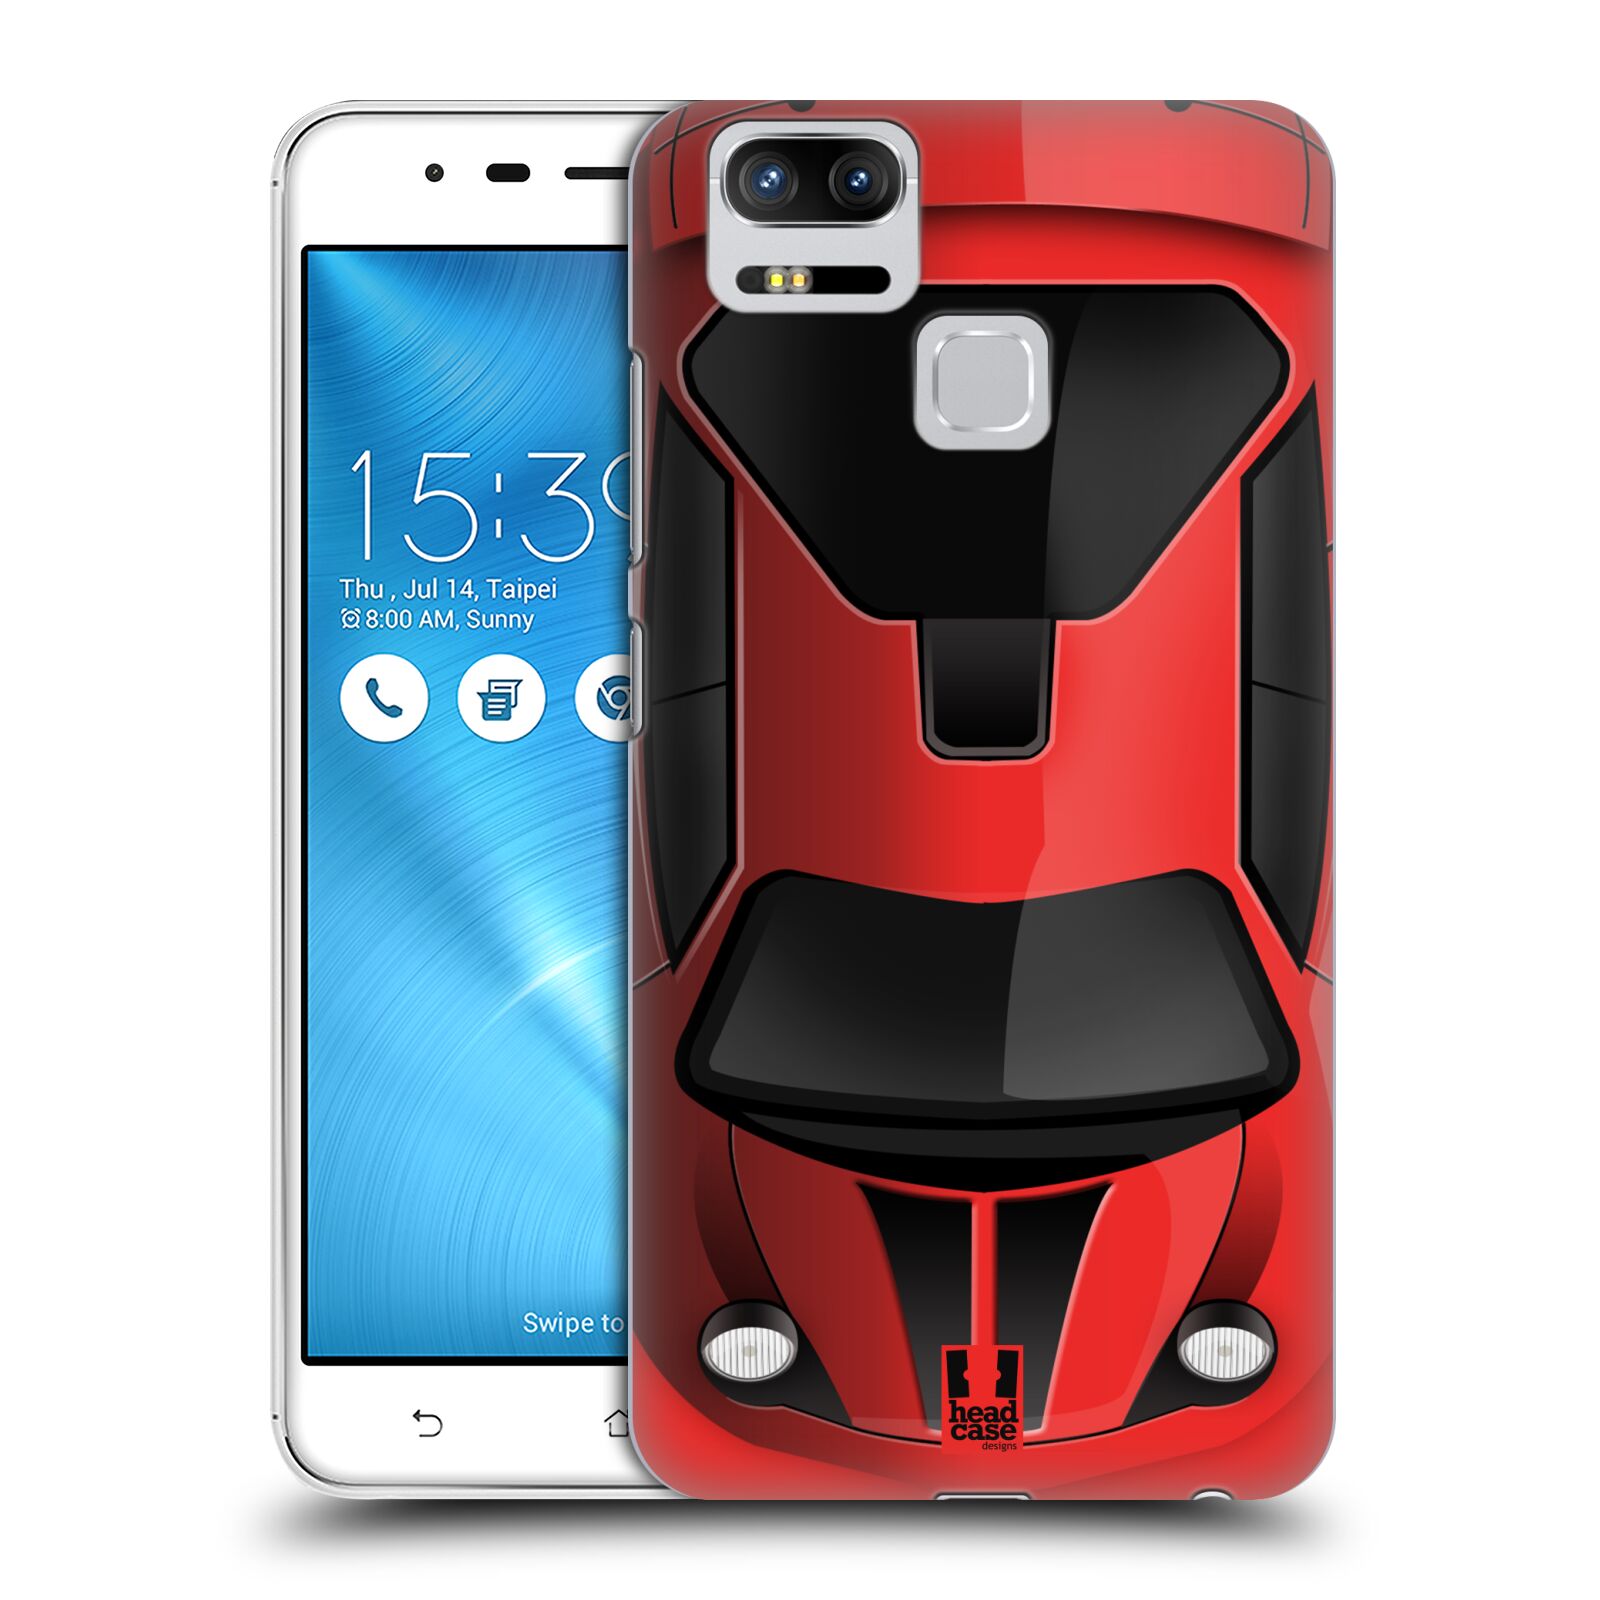 HEAD CASE plastový obal na mobil Asus Zenfone 3 Zoom ZE553KL vzor Auto horní pohled červená